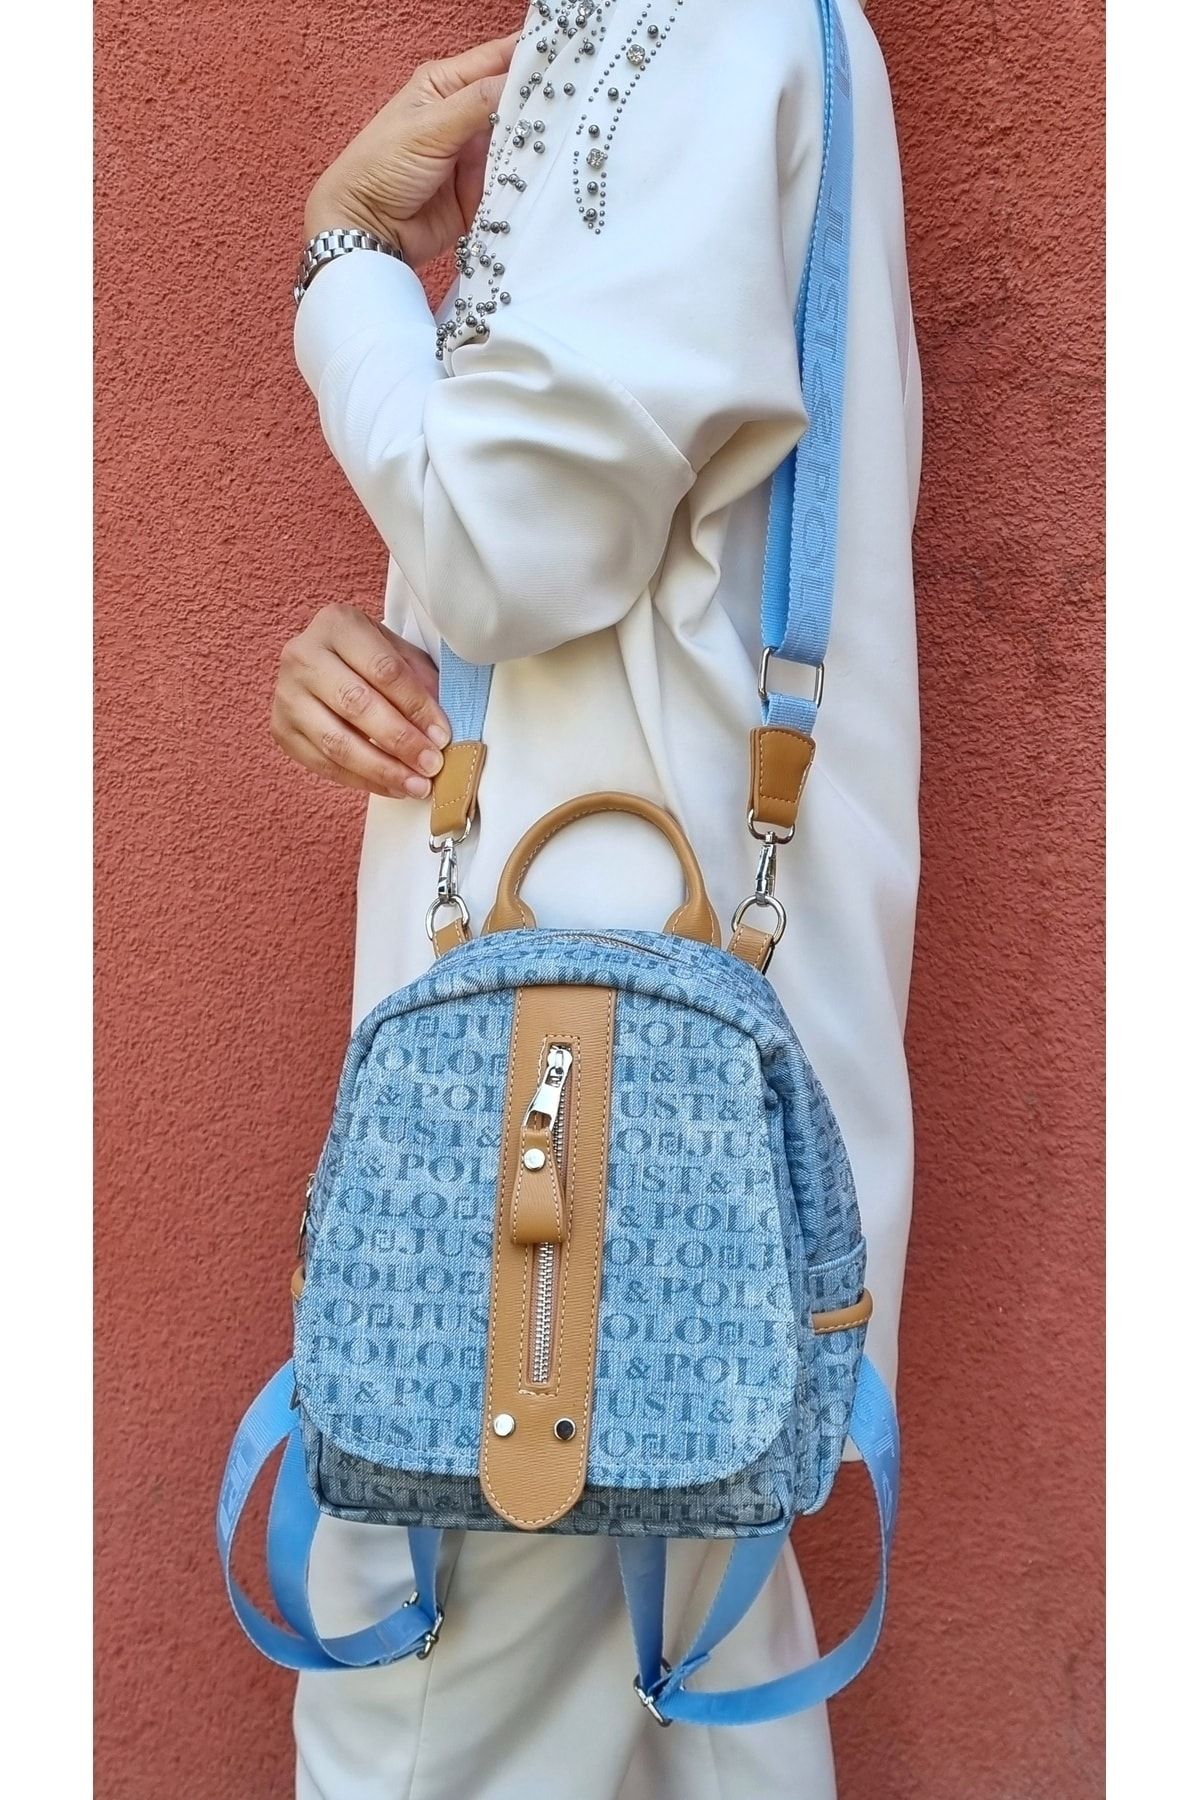 Just Polo justpolo kadın monogram baskılı sırt ve omuz çantası